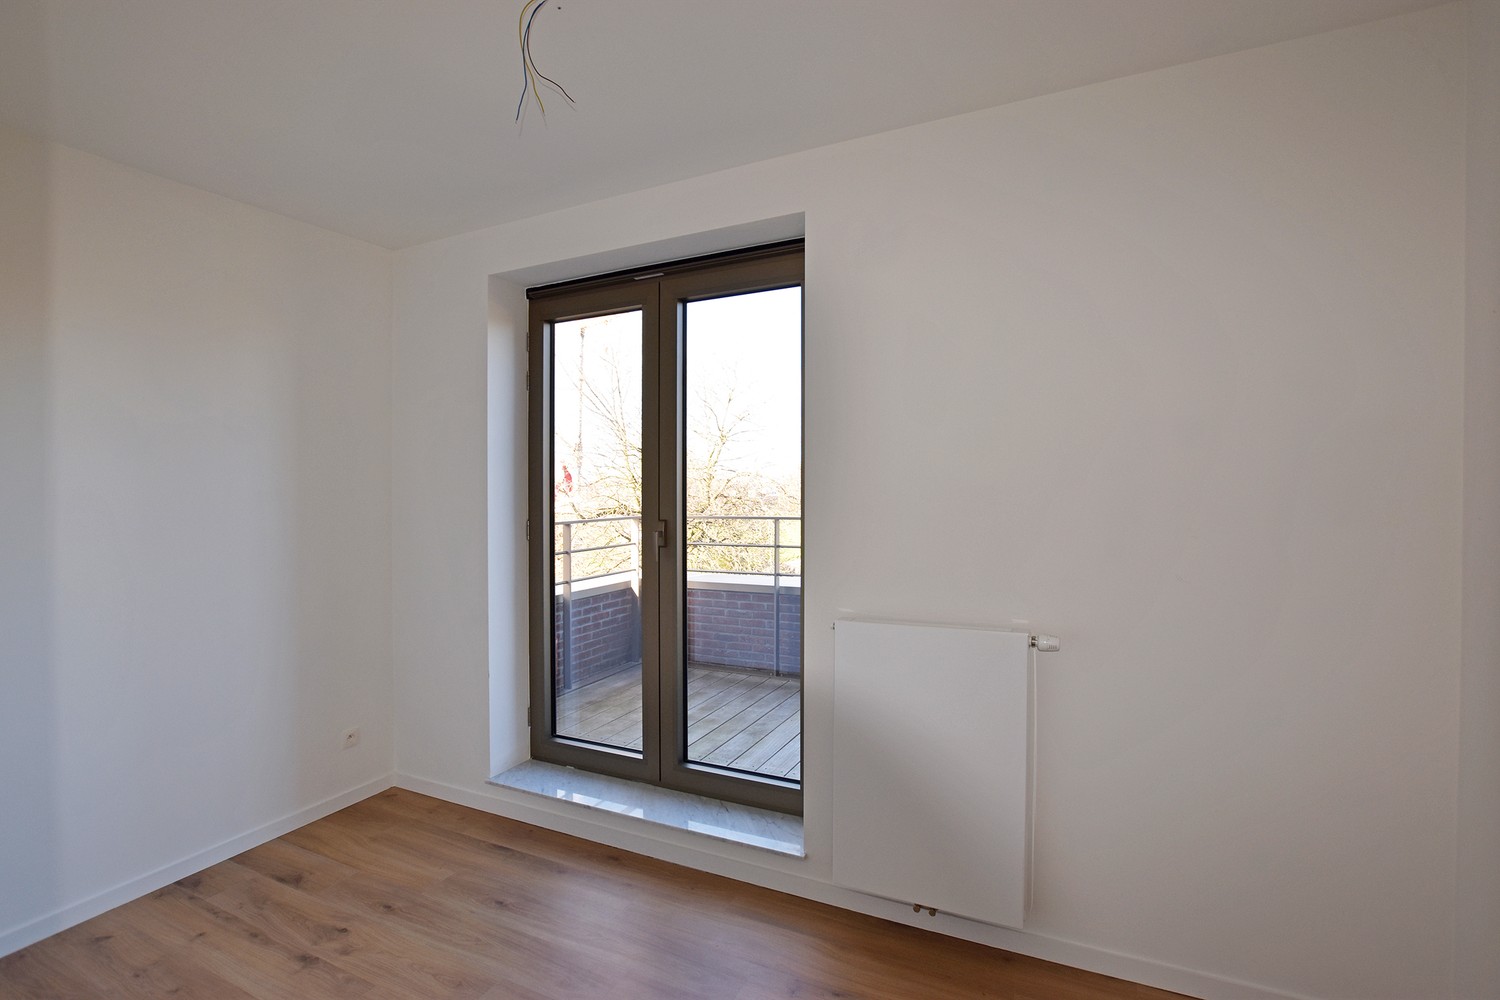 Riant nieuwbouwappartement met 3 slaapkamers en prachtig terras (45m²) te Wommelgem! afbeelding 7